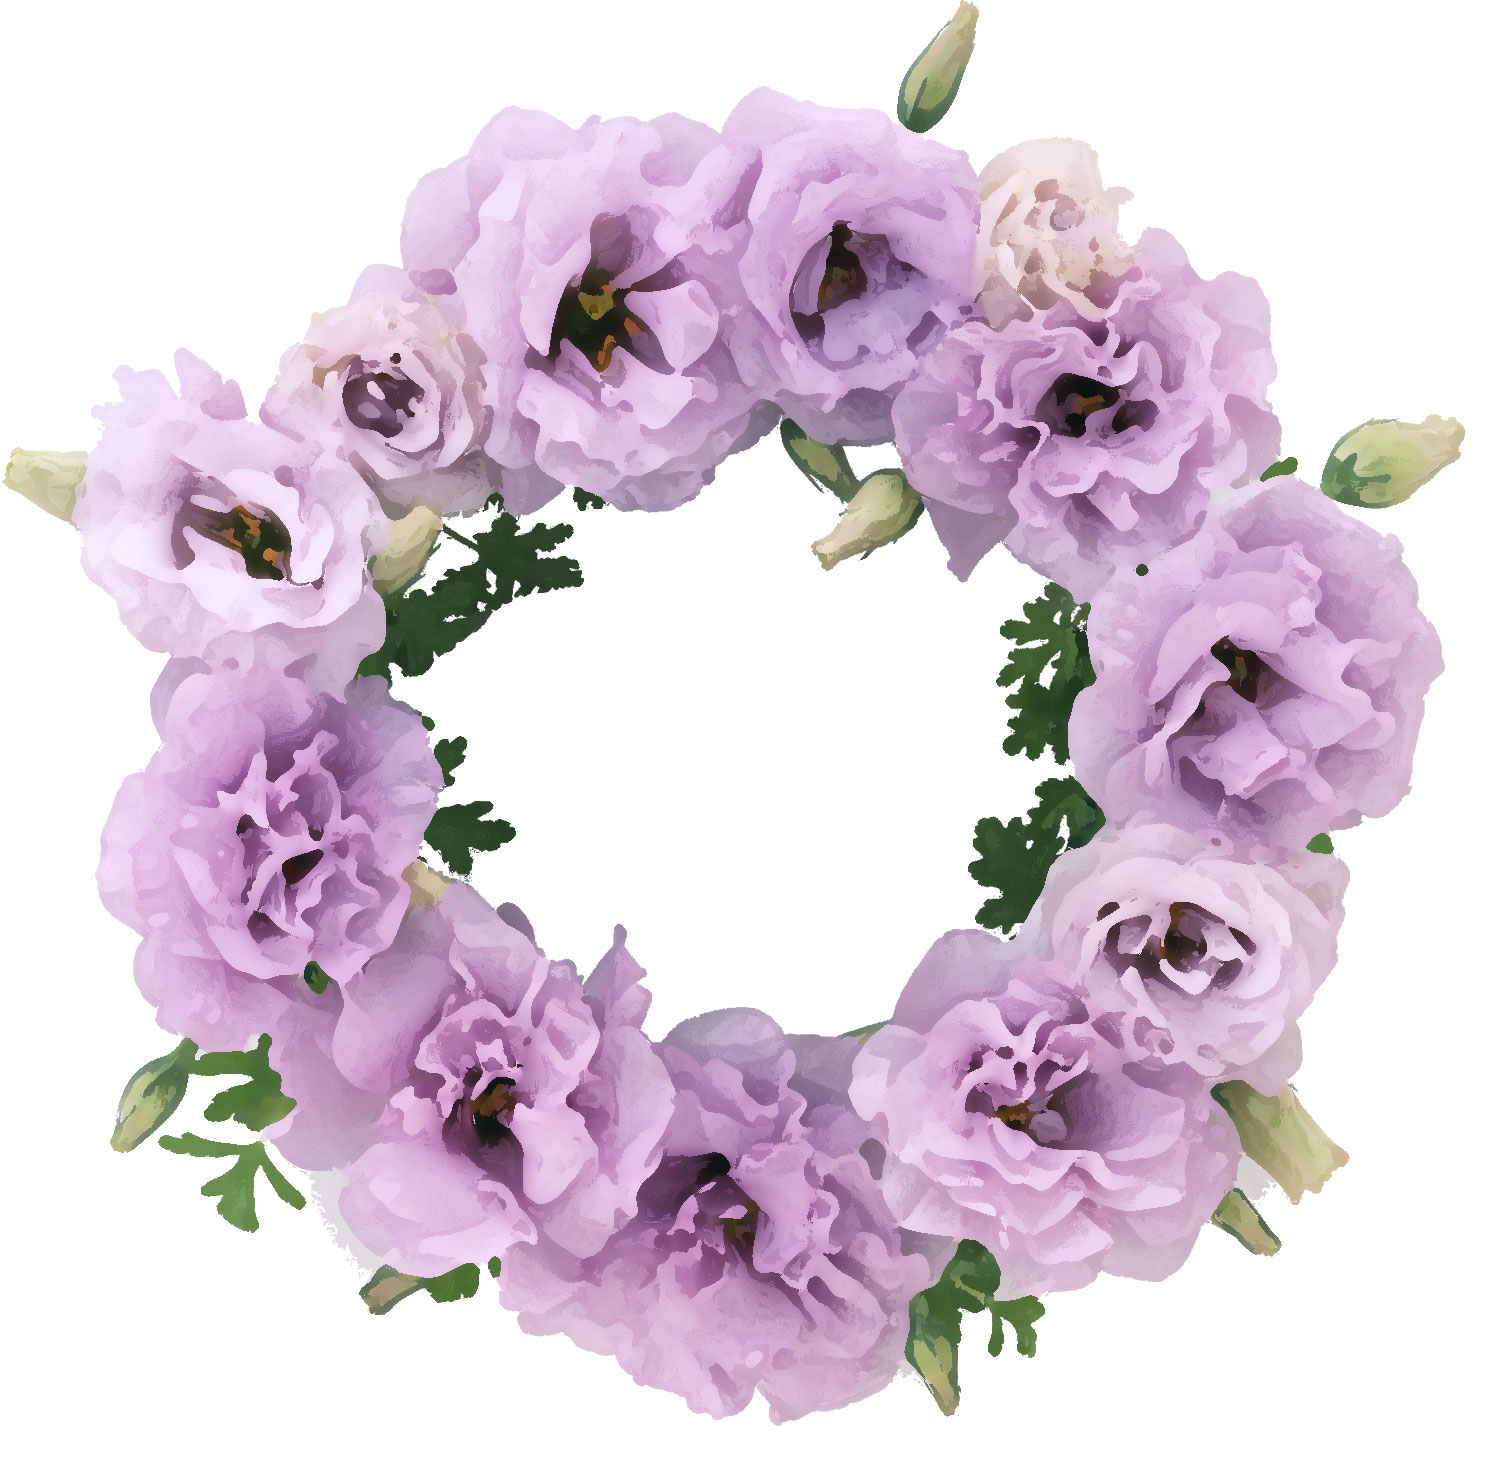 花のイラスト フリー素材 フレーム枠no 1 薄紫 カーネーション